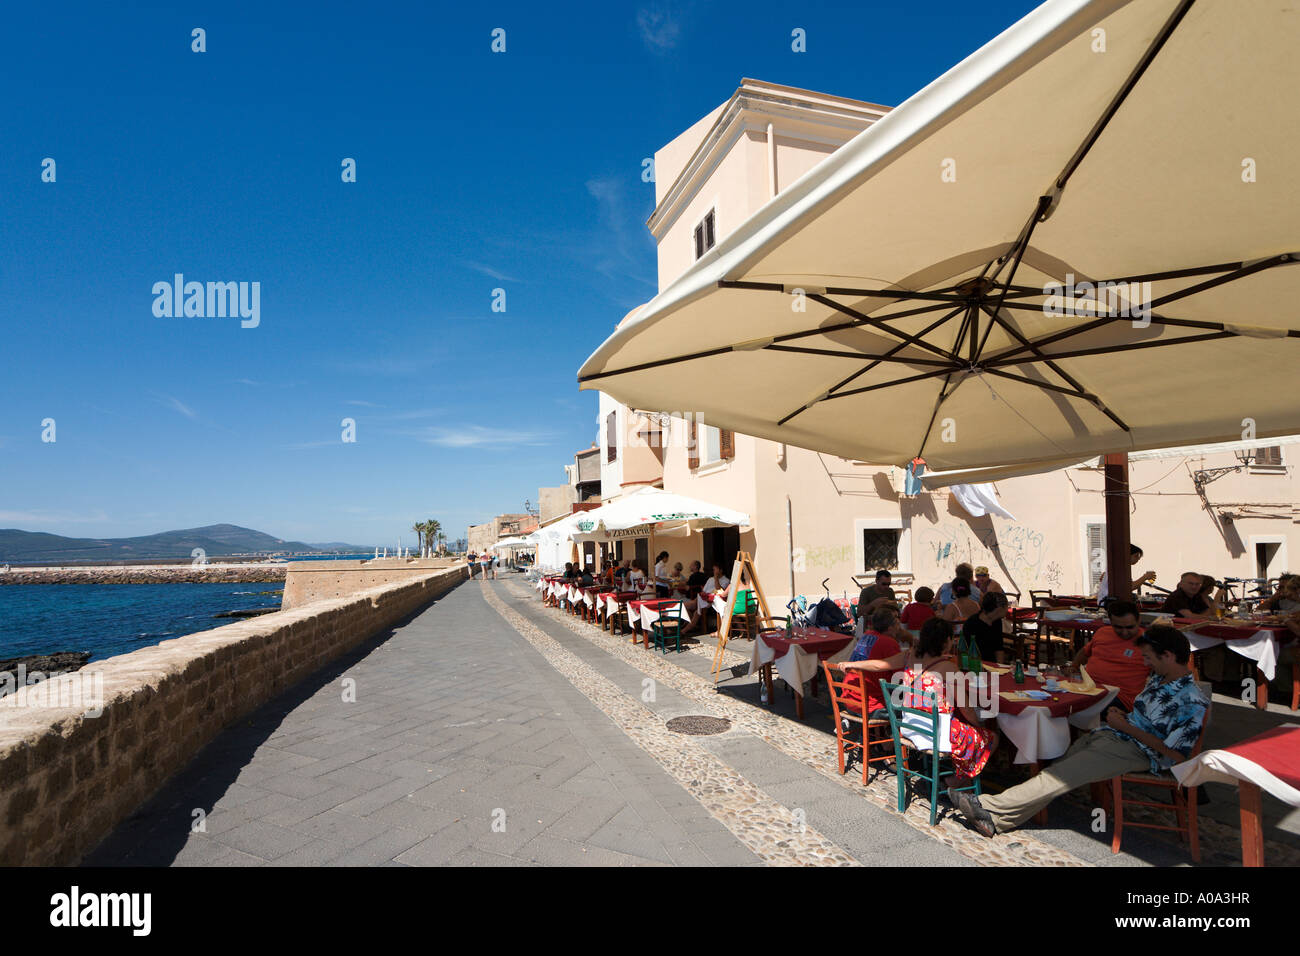 Restaurant en bord de mer sur les murs de la vieille ville, Alghero, Sardaigne, Italie Banque D'Images